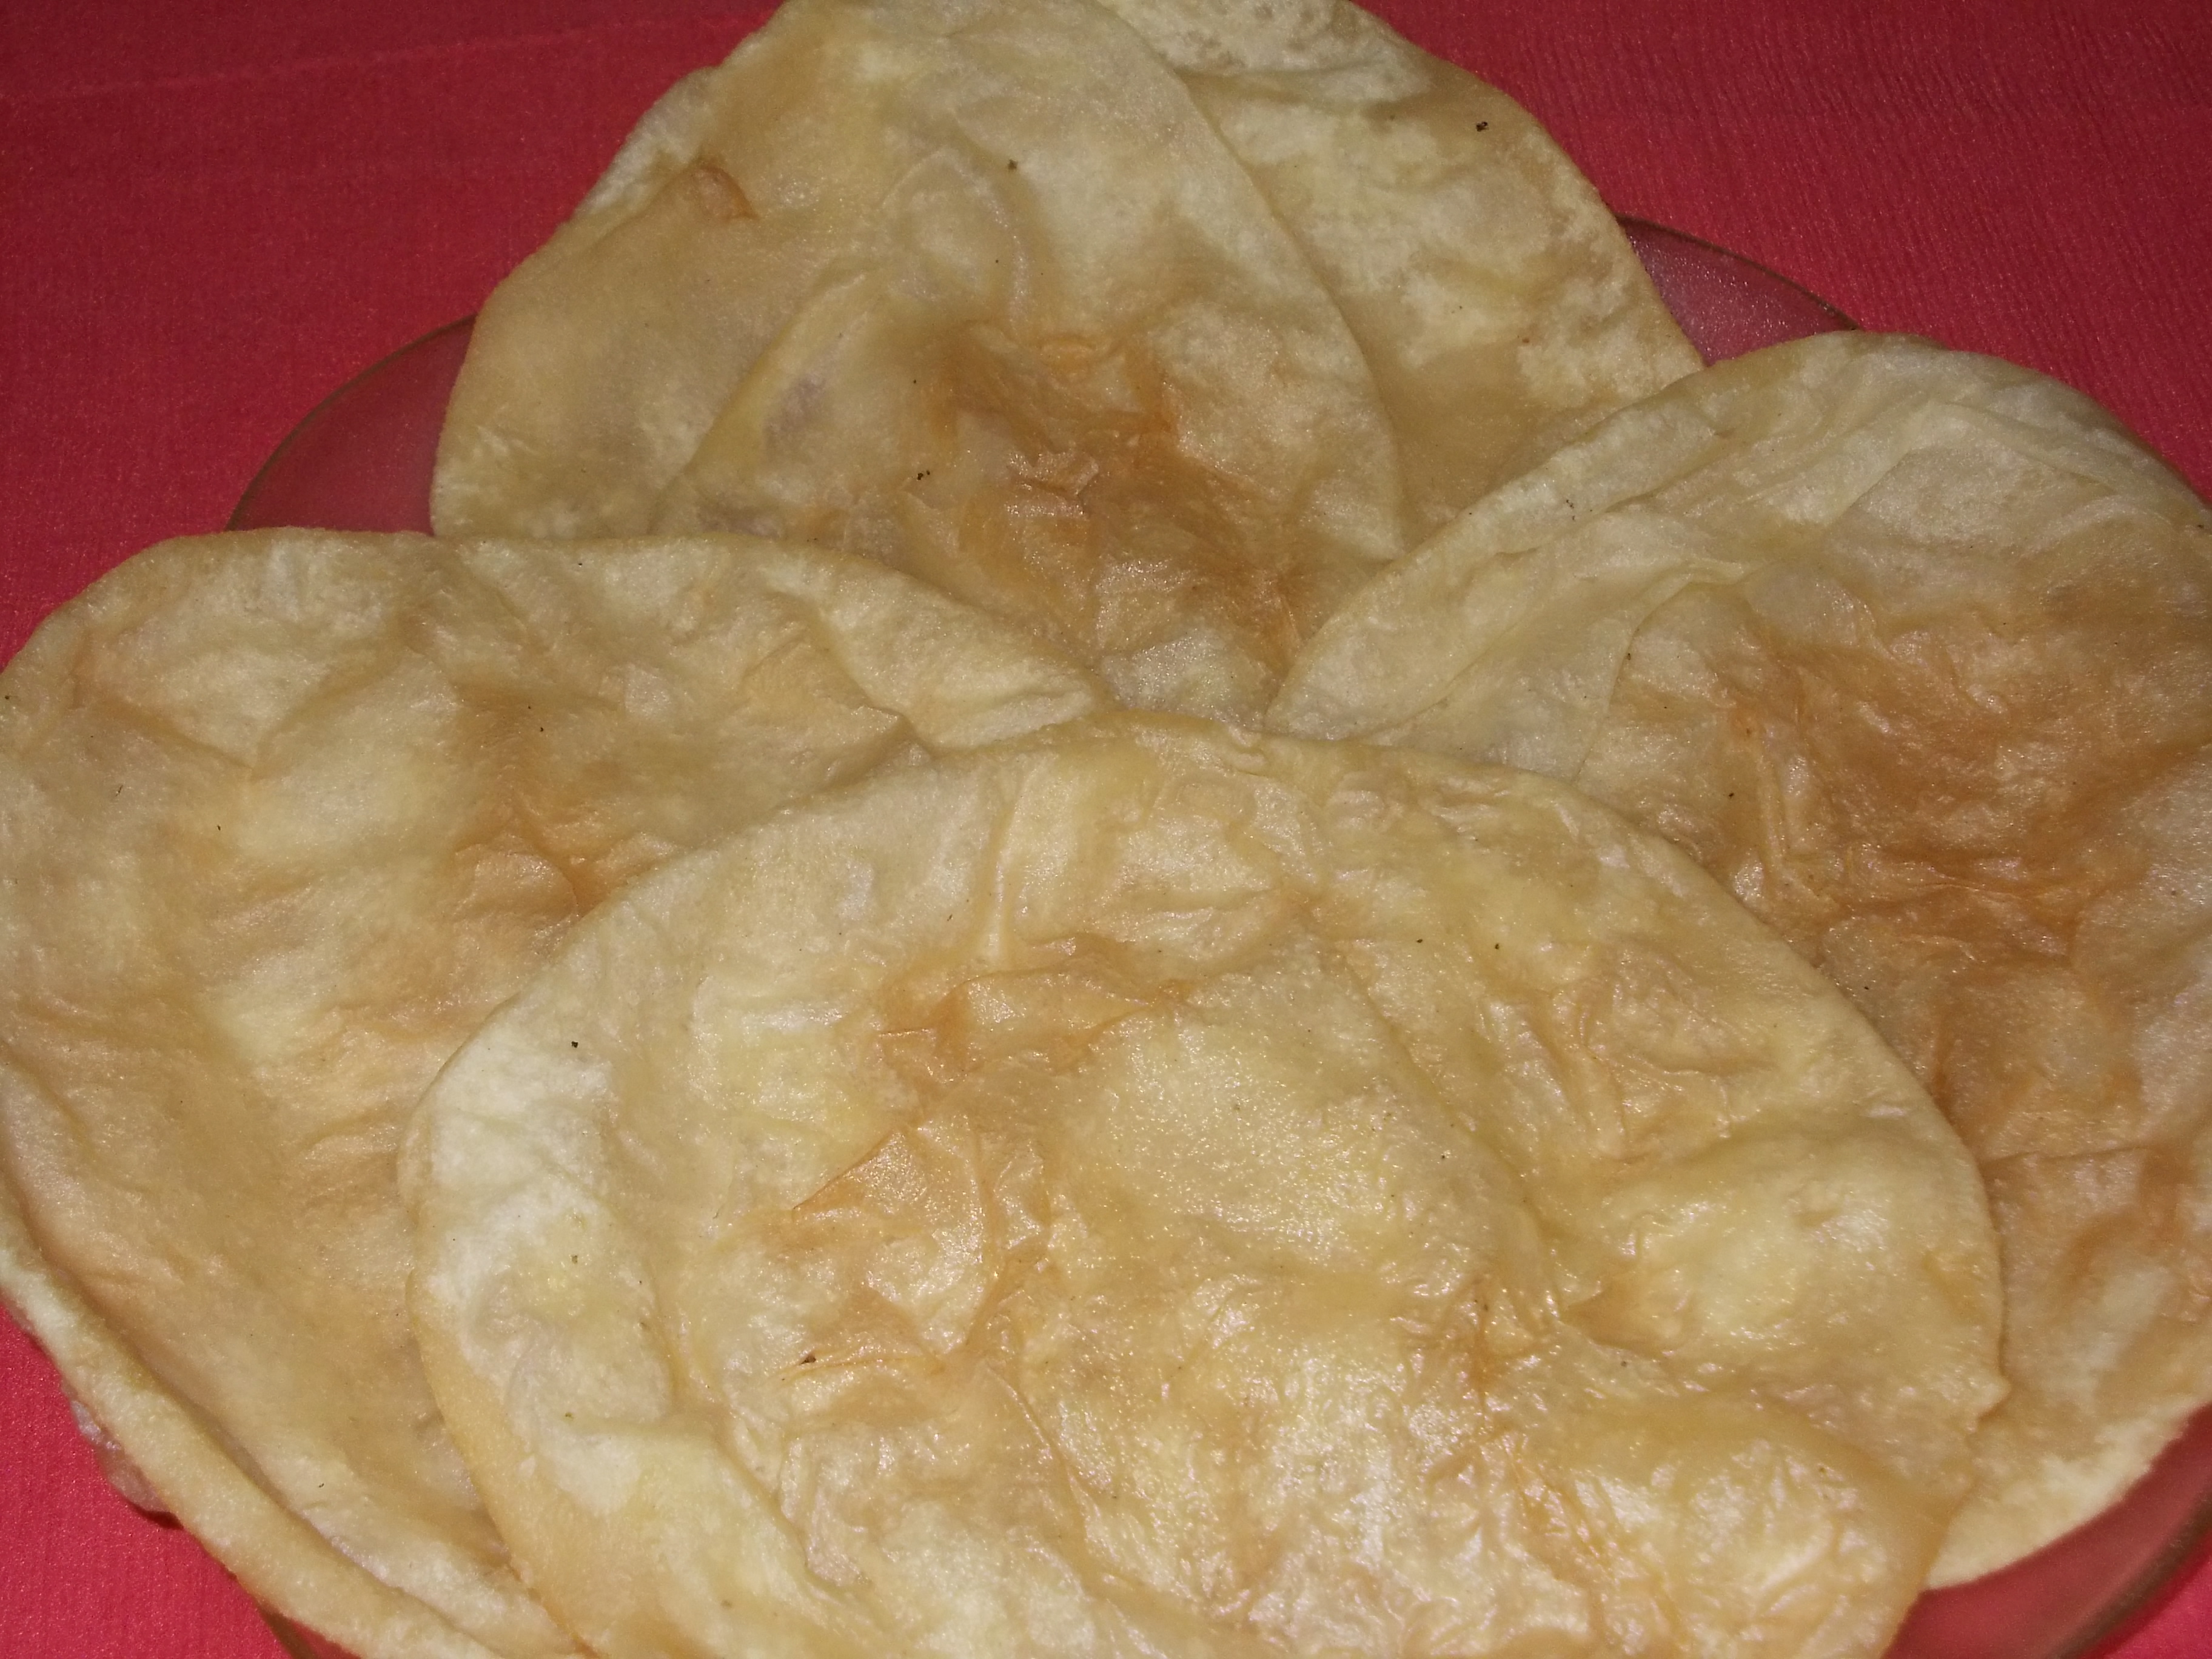 Bhatura Recipe